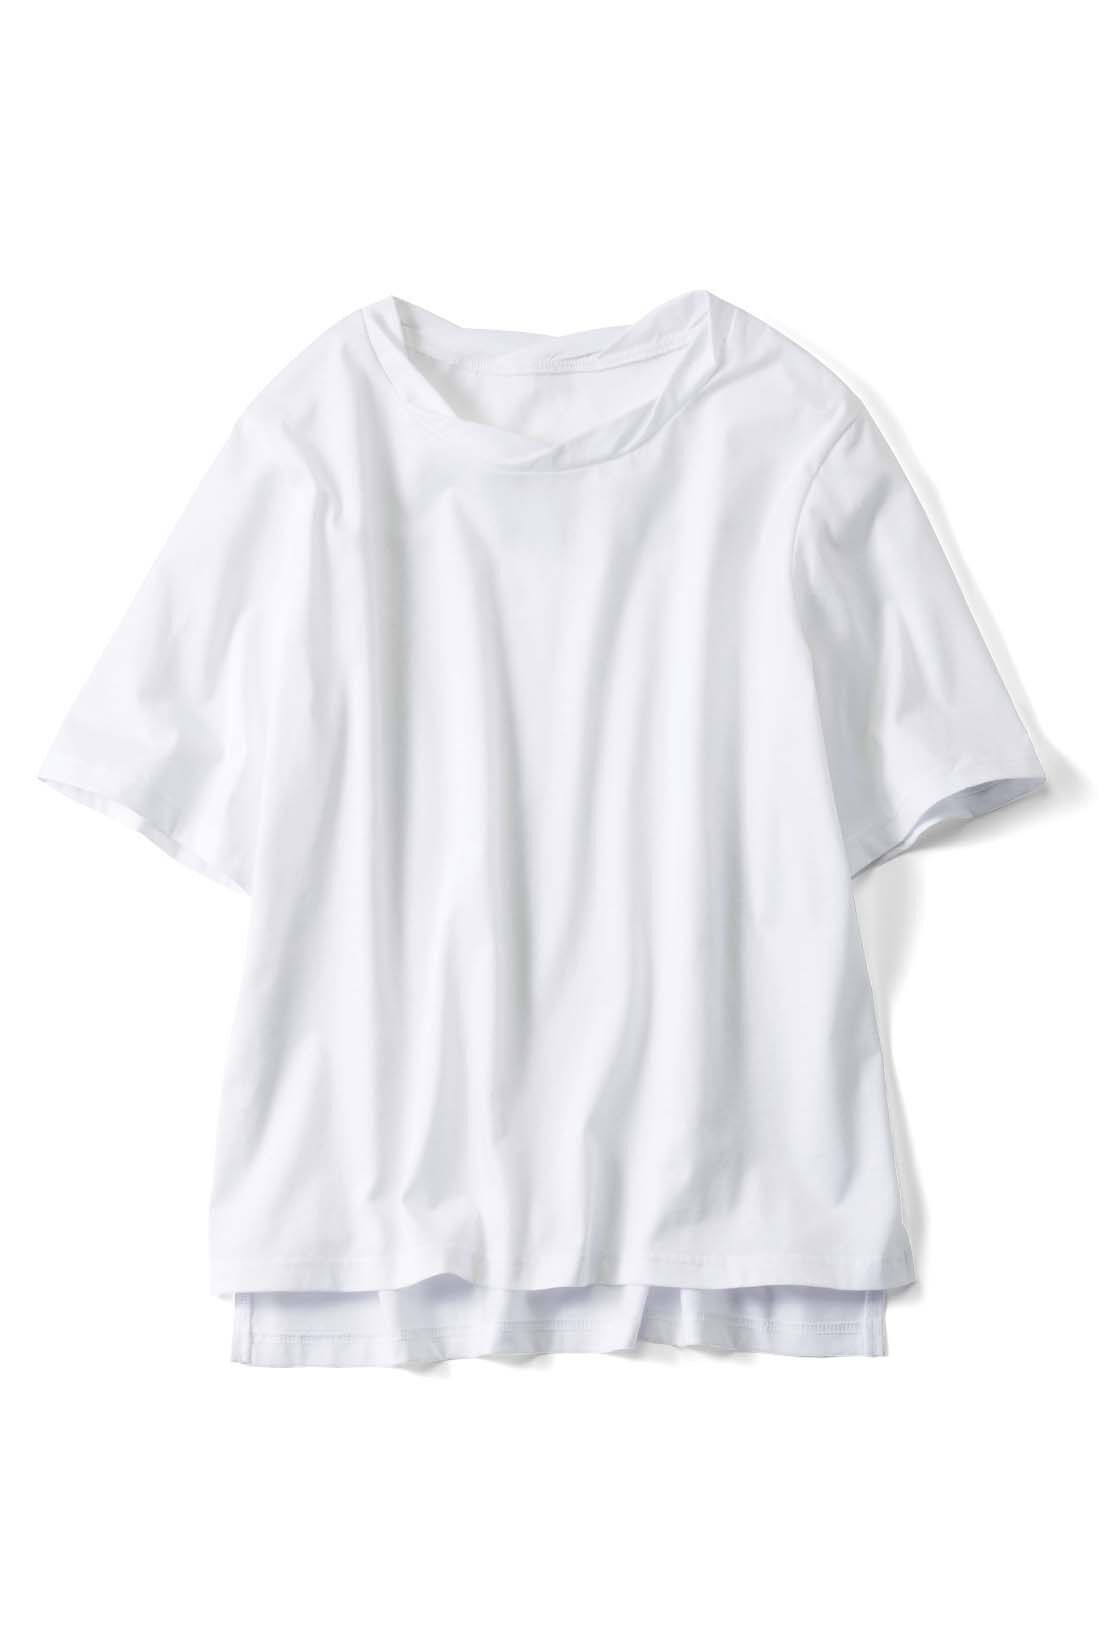 IEDIT|上品な光沢とやわらかさ 大人のシルク混Tシャツ〈オフホワイト〉【おはだが気になるみんなへ】